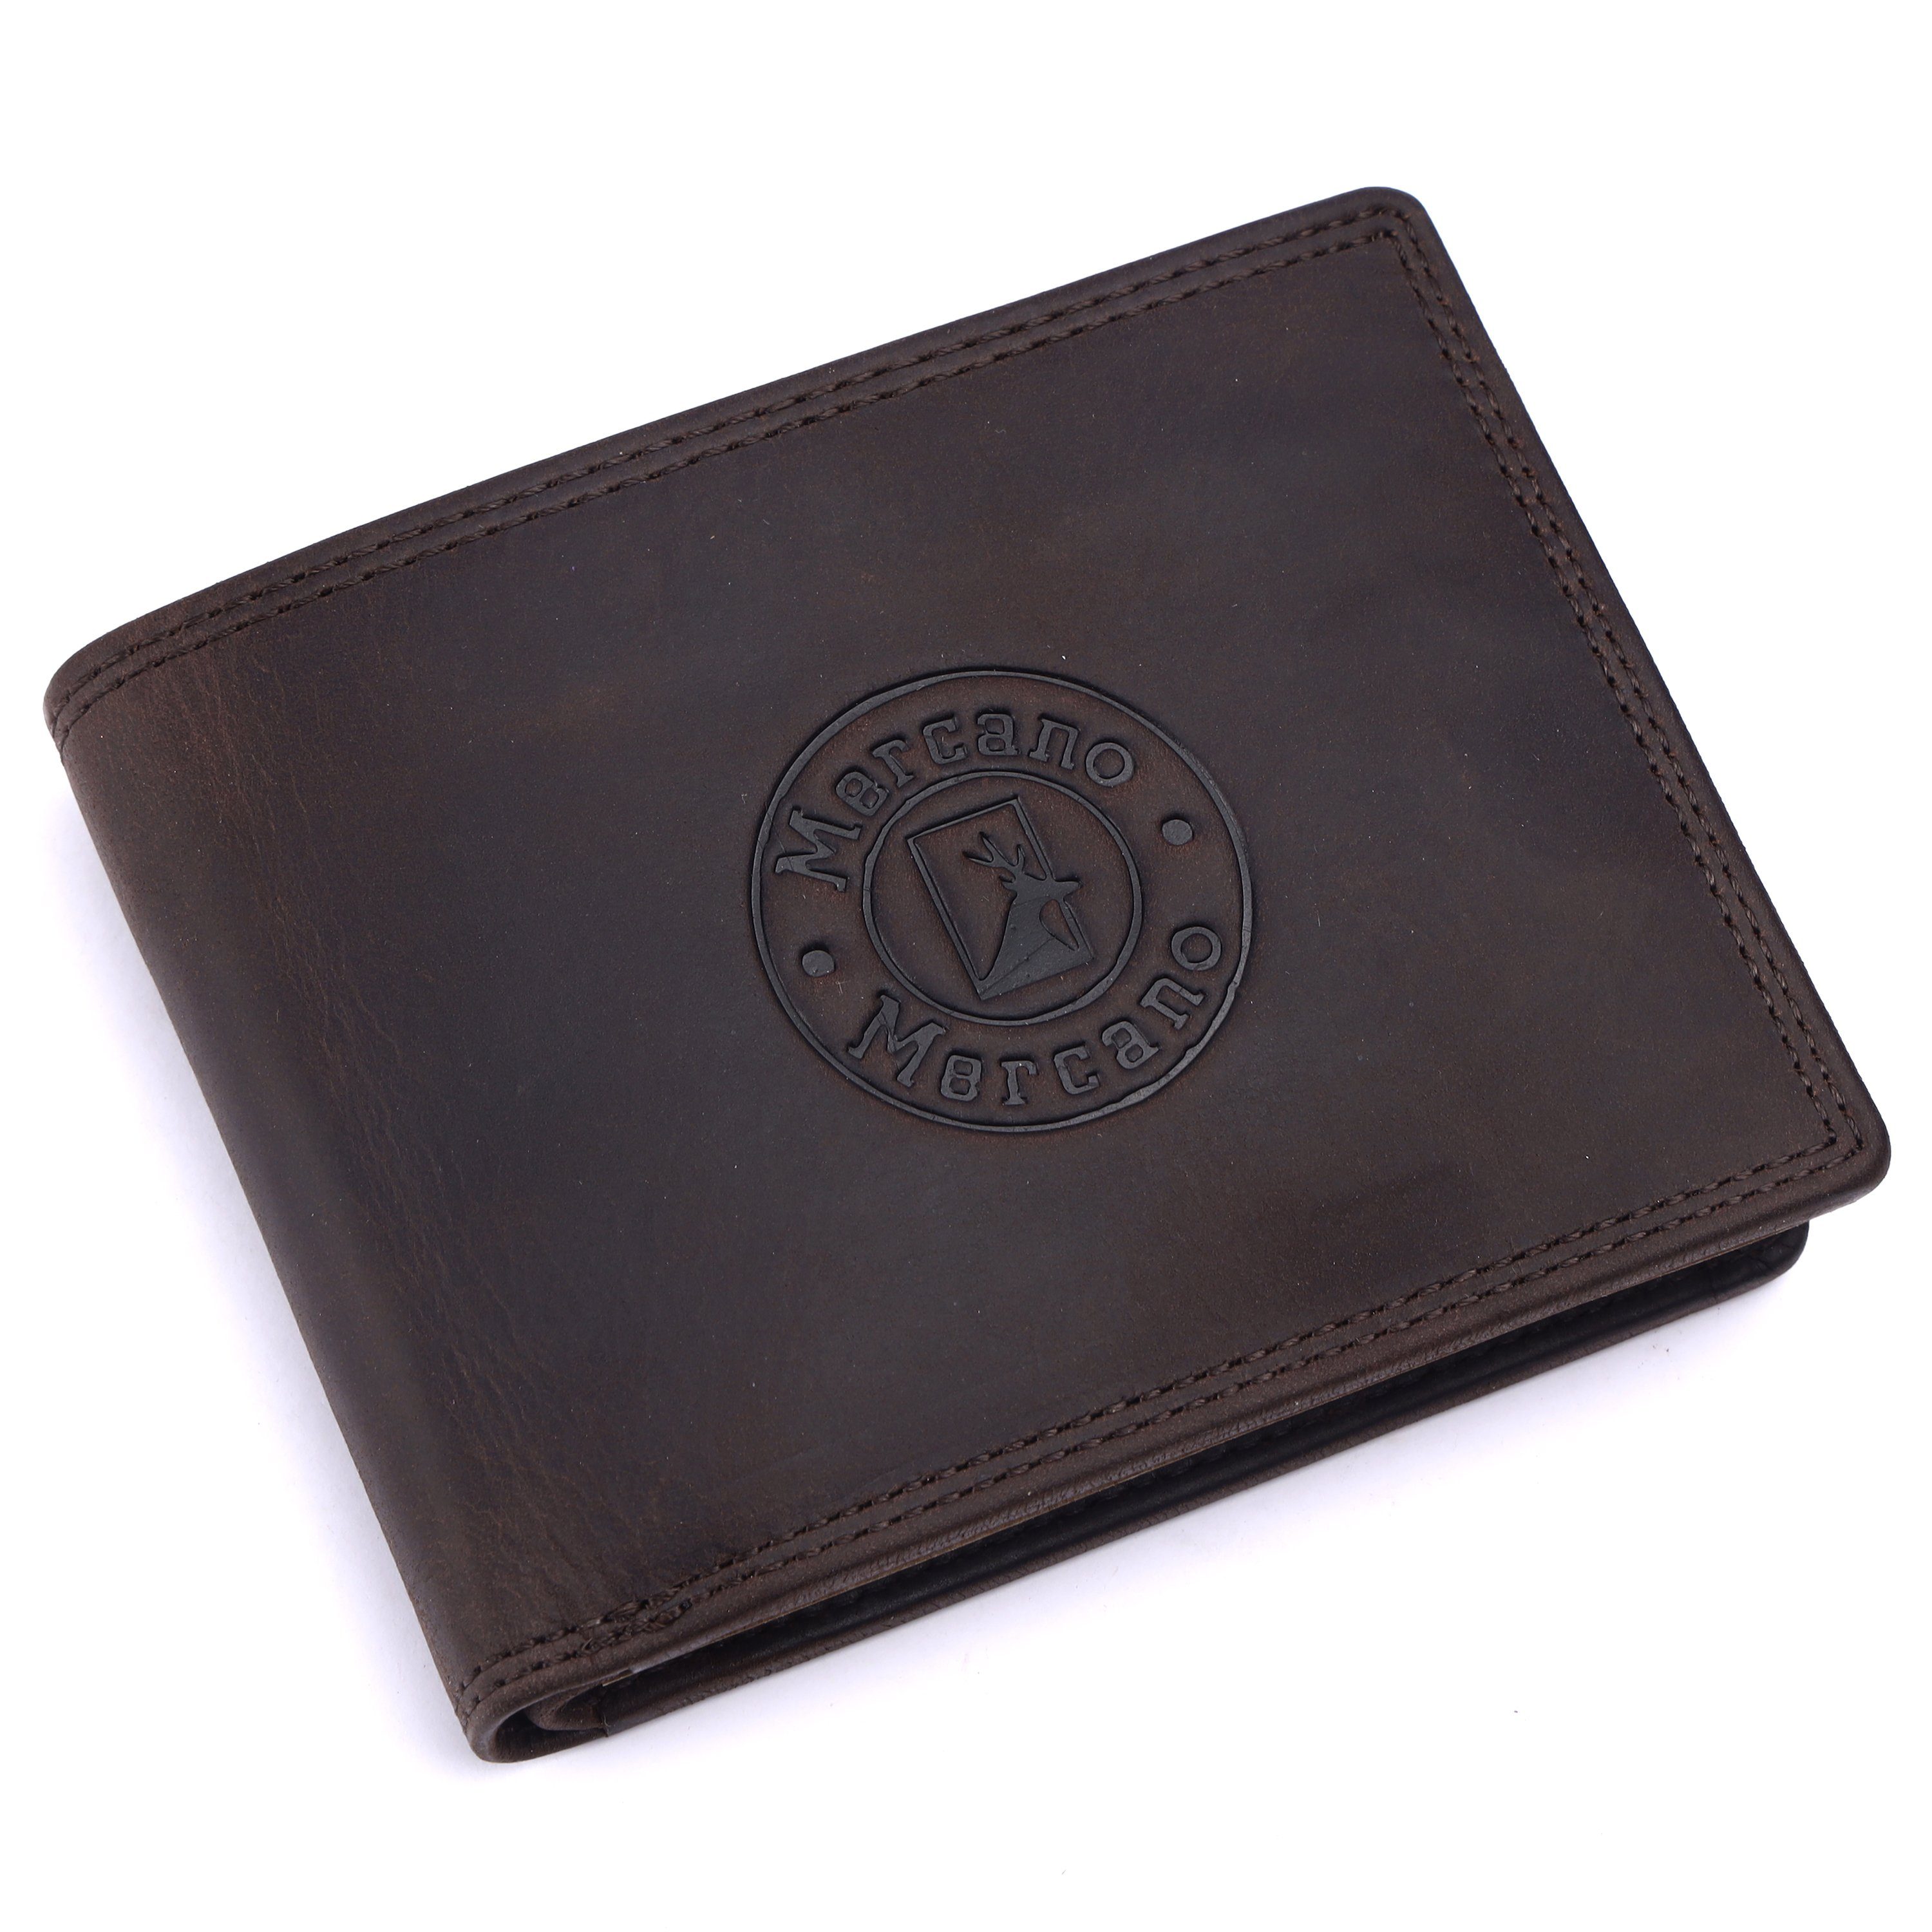 braune für Geschenkbox mit Vintage Leder aus & Mercano RFID-Schutz Herren, inkl. Doppelnaht, Geldbörse 100%